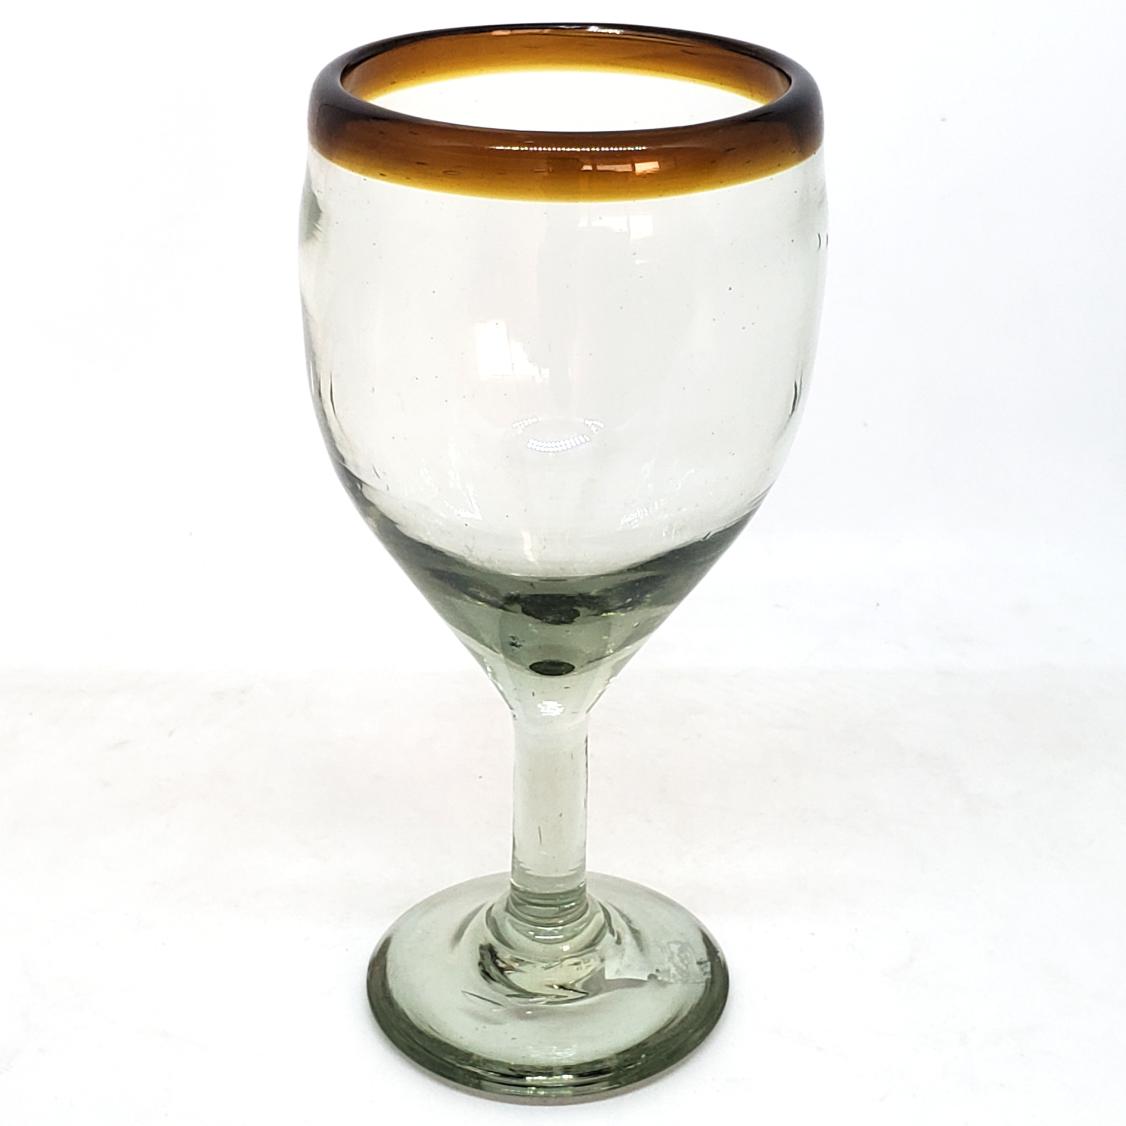 Borde Color Ambar al Mayoreo / copas para vino con borde ambar / Capture el aroma de un fino vino tinto con stas copas decoradas con un borde ambar.